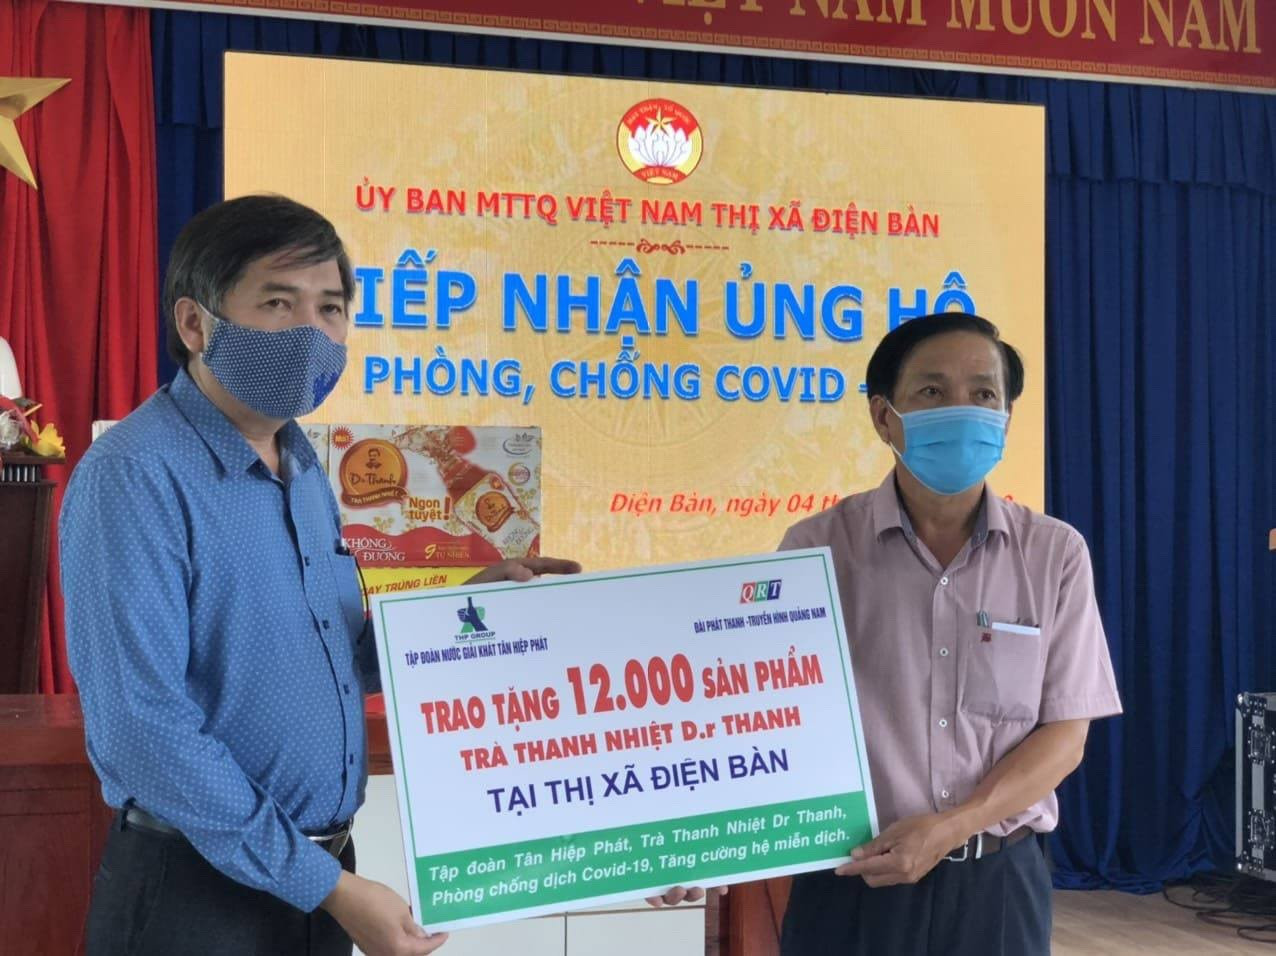 Đại diện lãnh đạo Đài PT-TH Quảng Nam trao tặng 12.000 sản phẩm Trà Thanh Nhiệt Dr Thanh cho lãnh đạo UBND thị xã Điện Bàn – Quảng Nam.